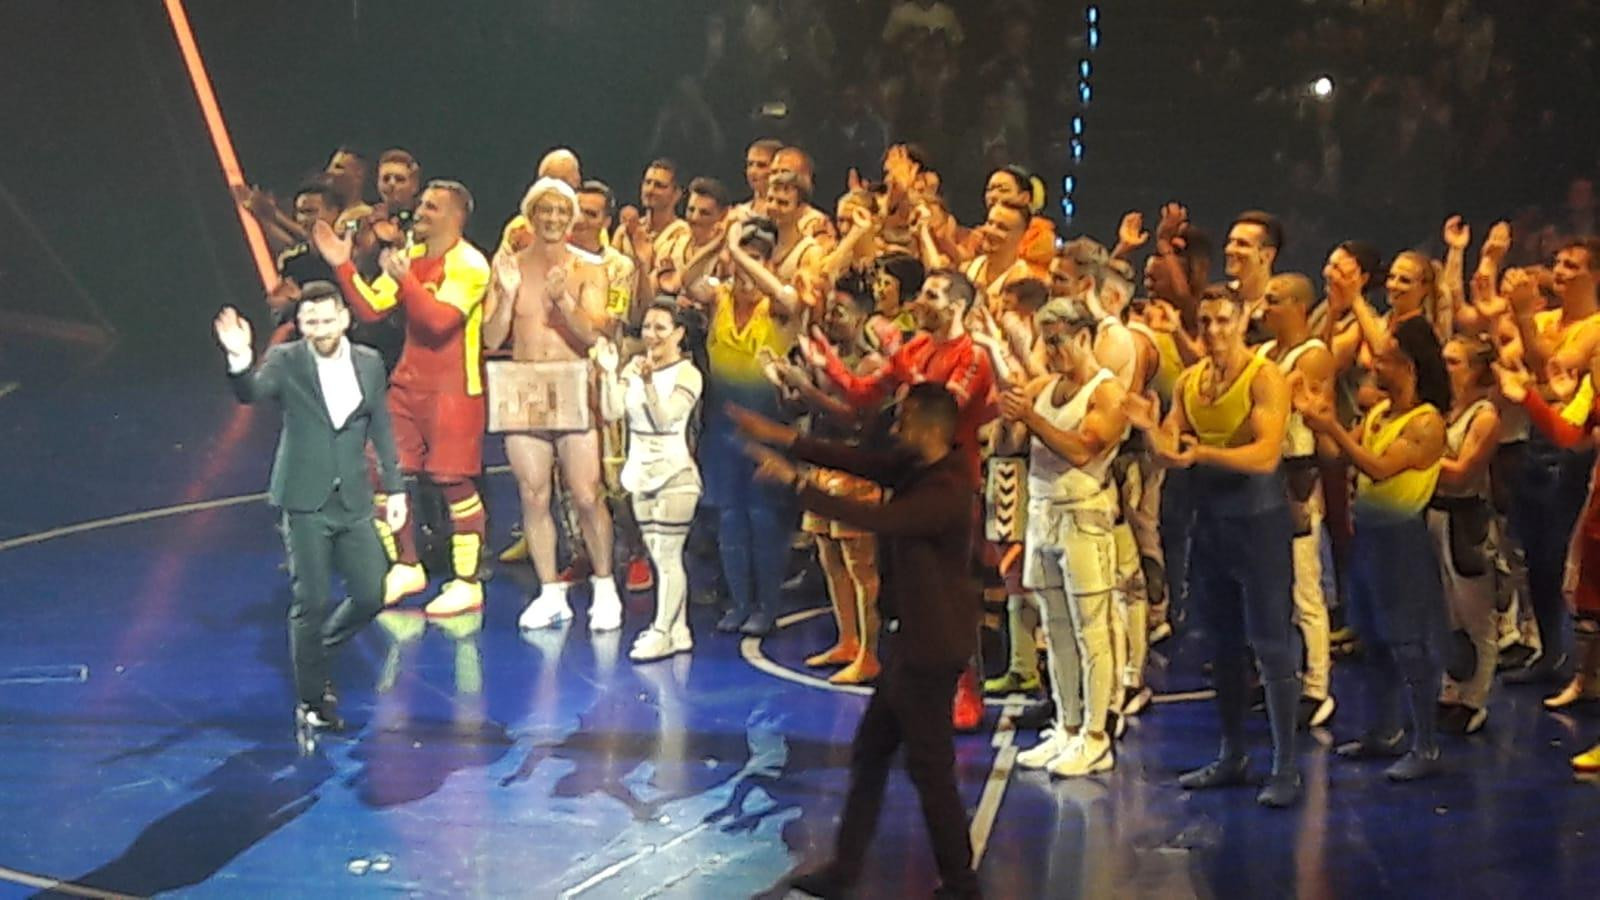 Leo Messi en el momento que sale a agradecer y felicitar a los artistas de 'Cirque du Soleil' / CG